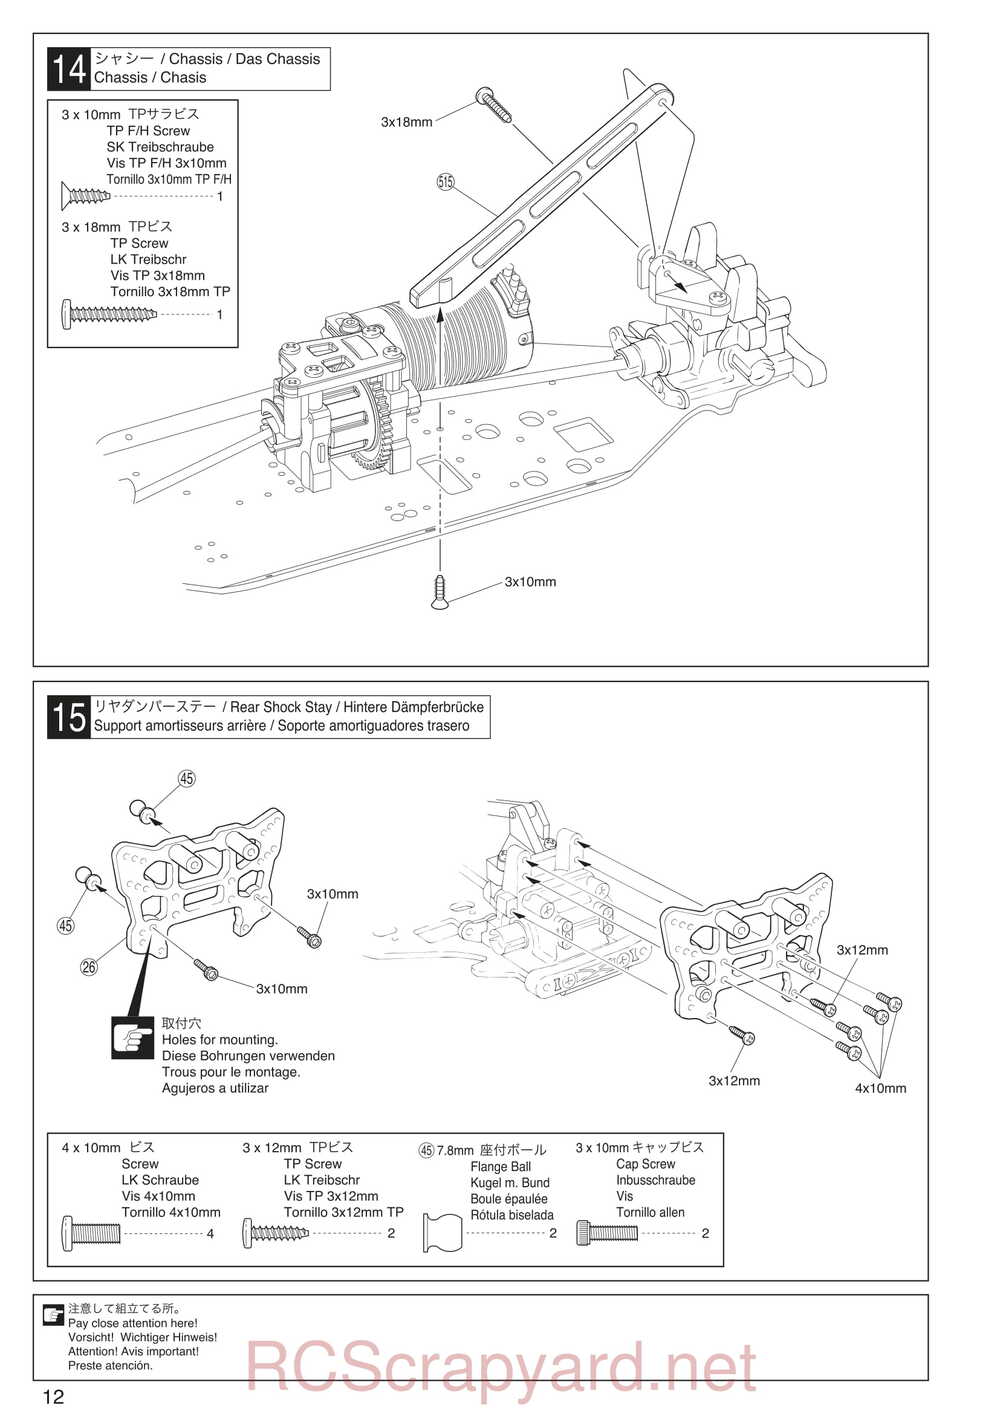 Kyosho - 30935 - Inferno GT2 VE Race-Spec - Manual - Page 12